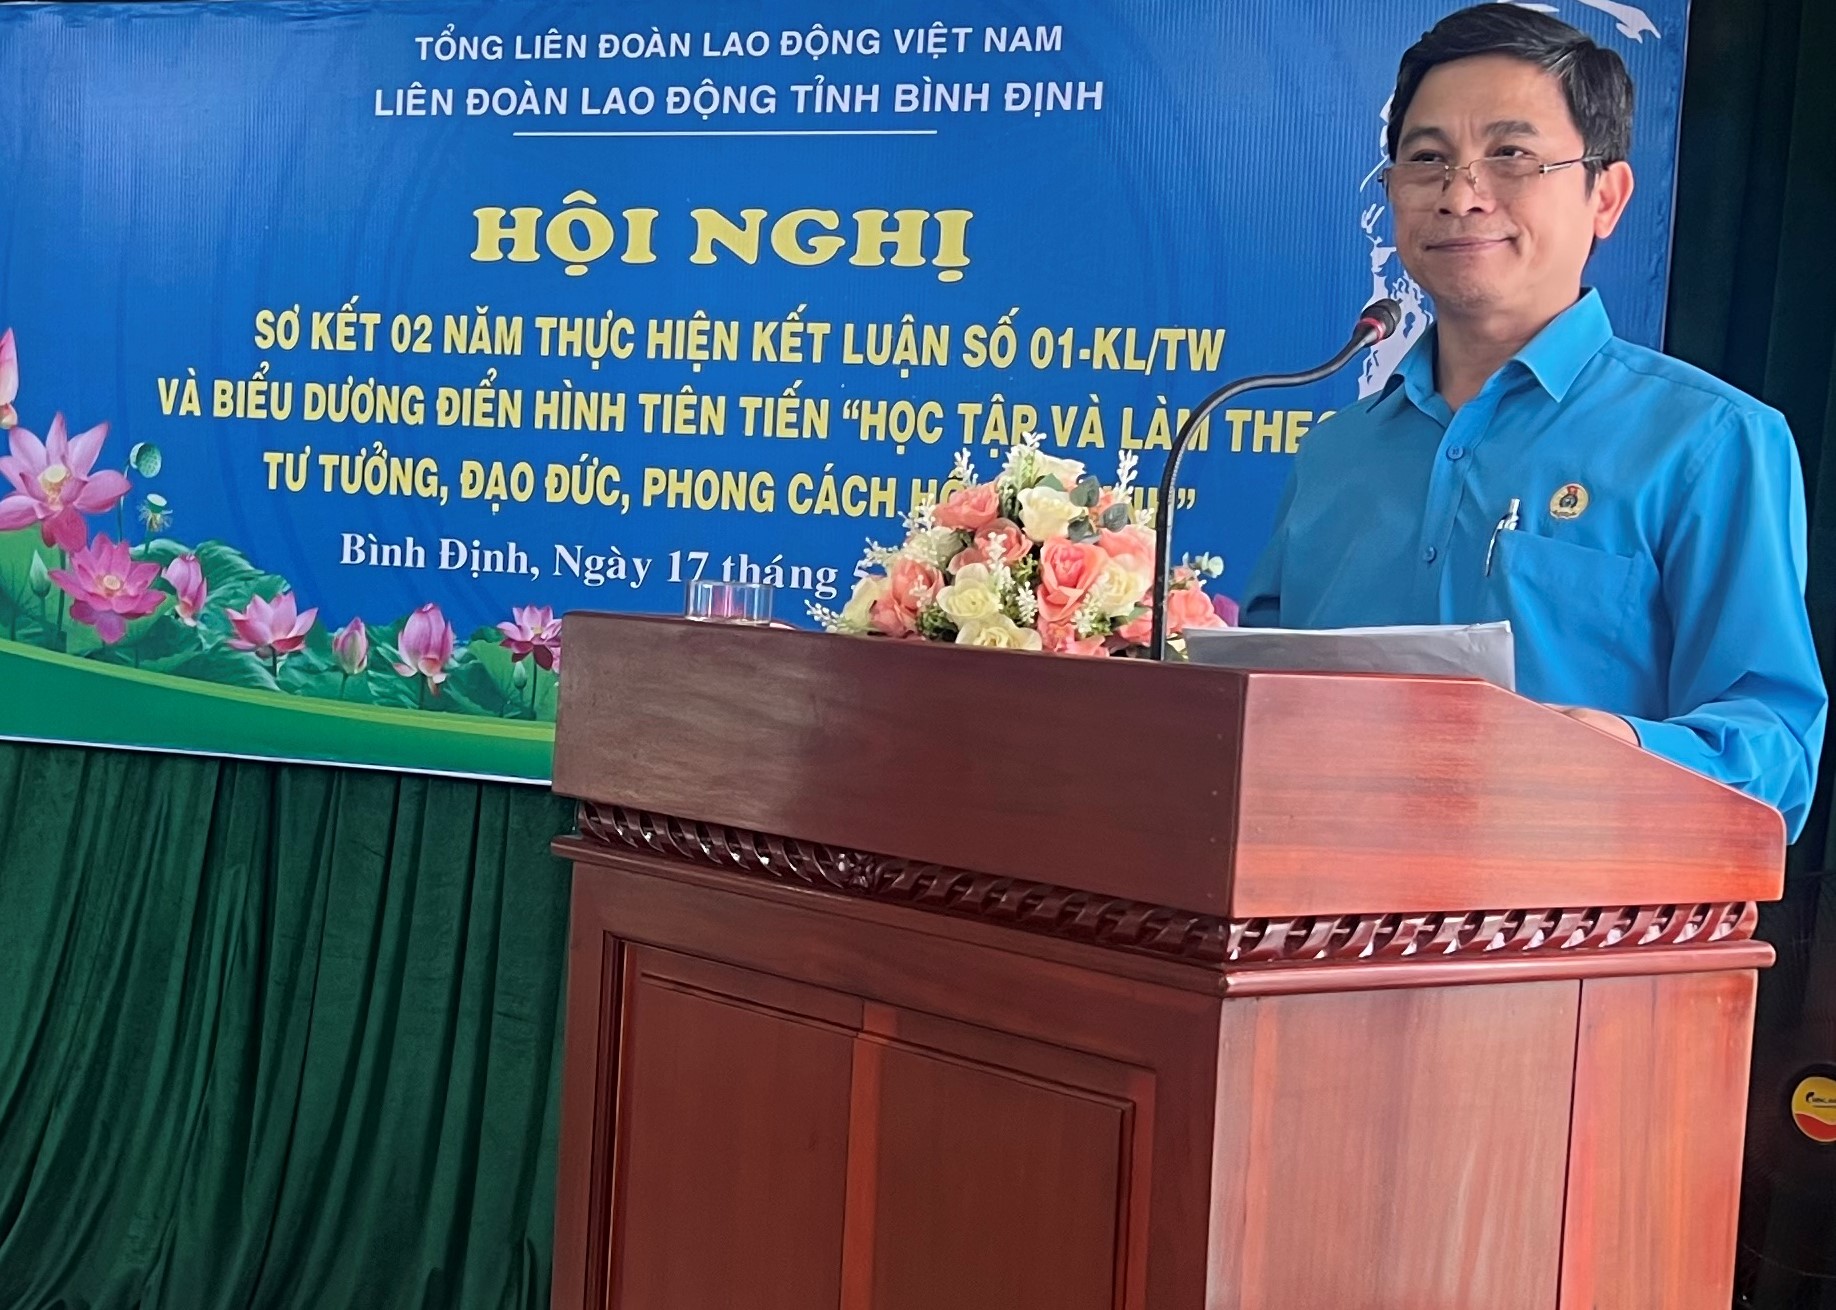 Ông Nguyễn Mạnh Hùng giới thiệu nội dung tác phẩm chống tham nhũng, tiêu cực của Tổng Bí thư. Ảnh: Xuân Nhàn.